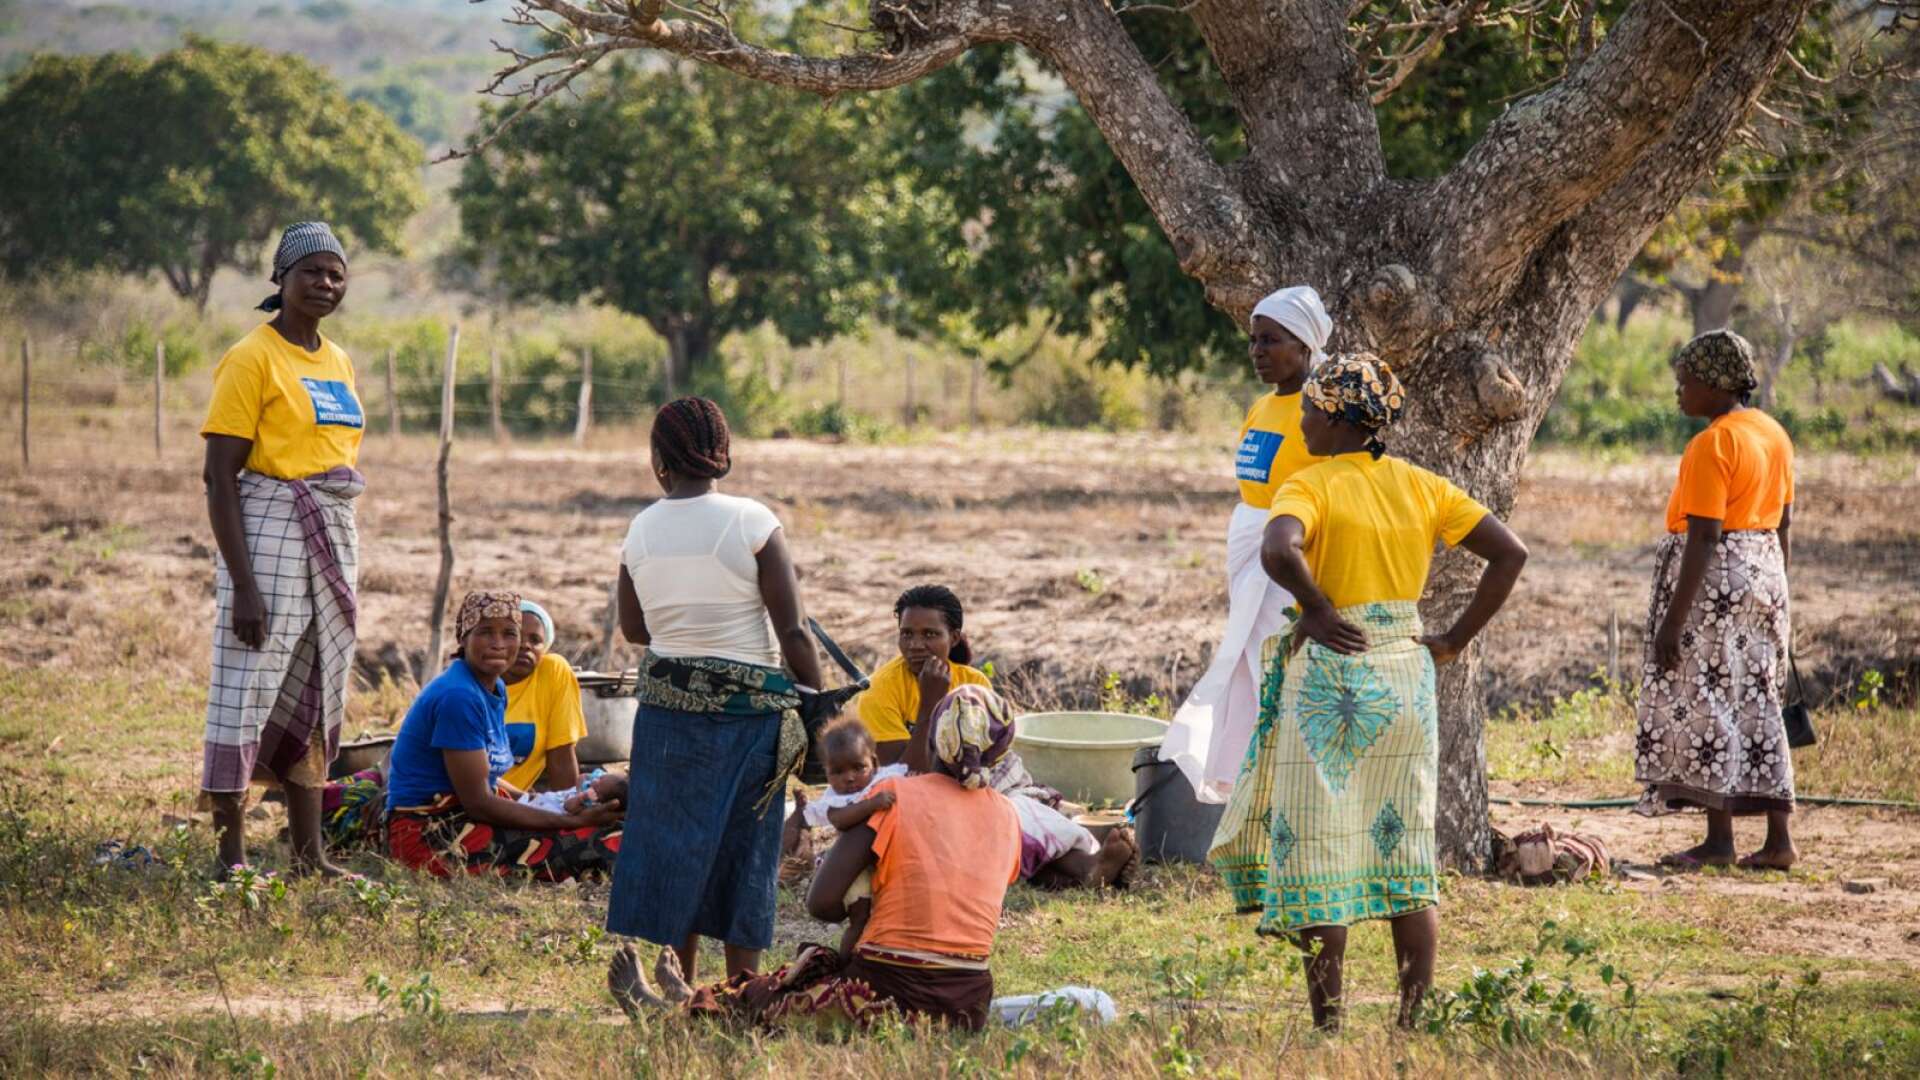 Cyklonen Idai slog hårt mot länder som Moçambique, Malawi och Zimbabwe. Media rapporter om att det varit svårt att nå sjukvården och att översvämningarna gör att kolera och andra sjukdomar sprids via vattnet, skriver Silvia Ernhagen.